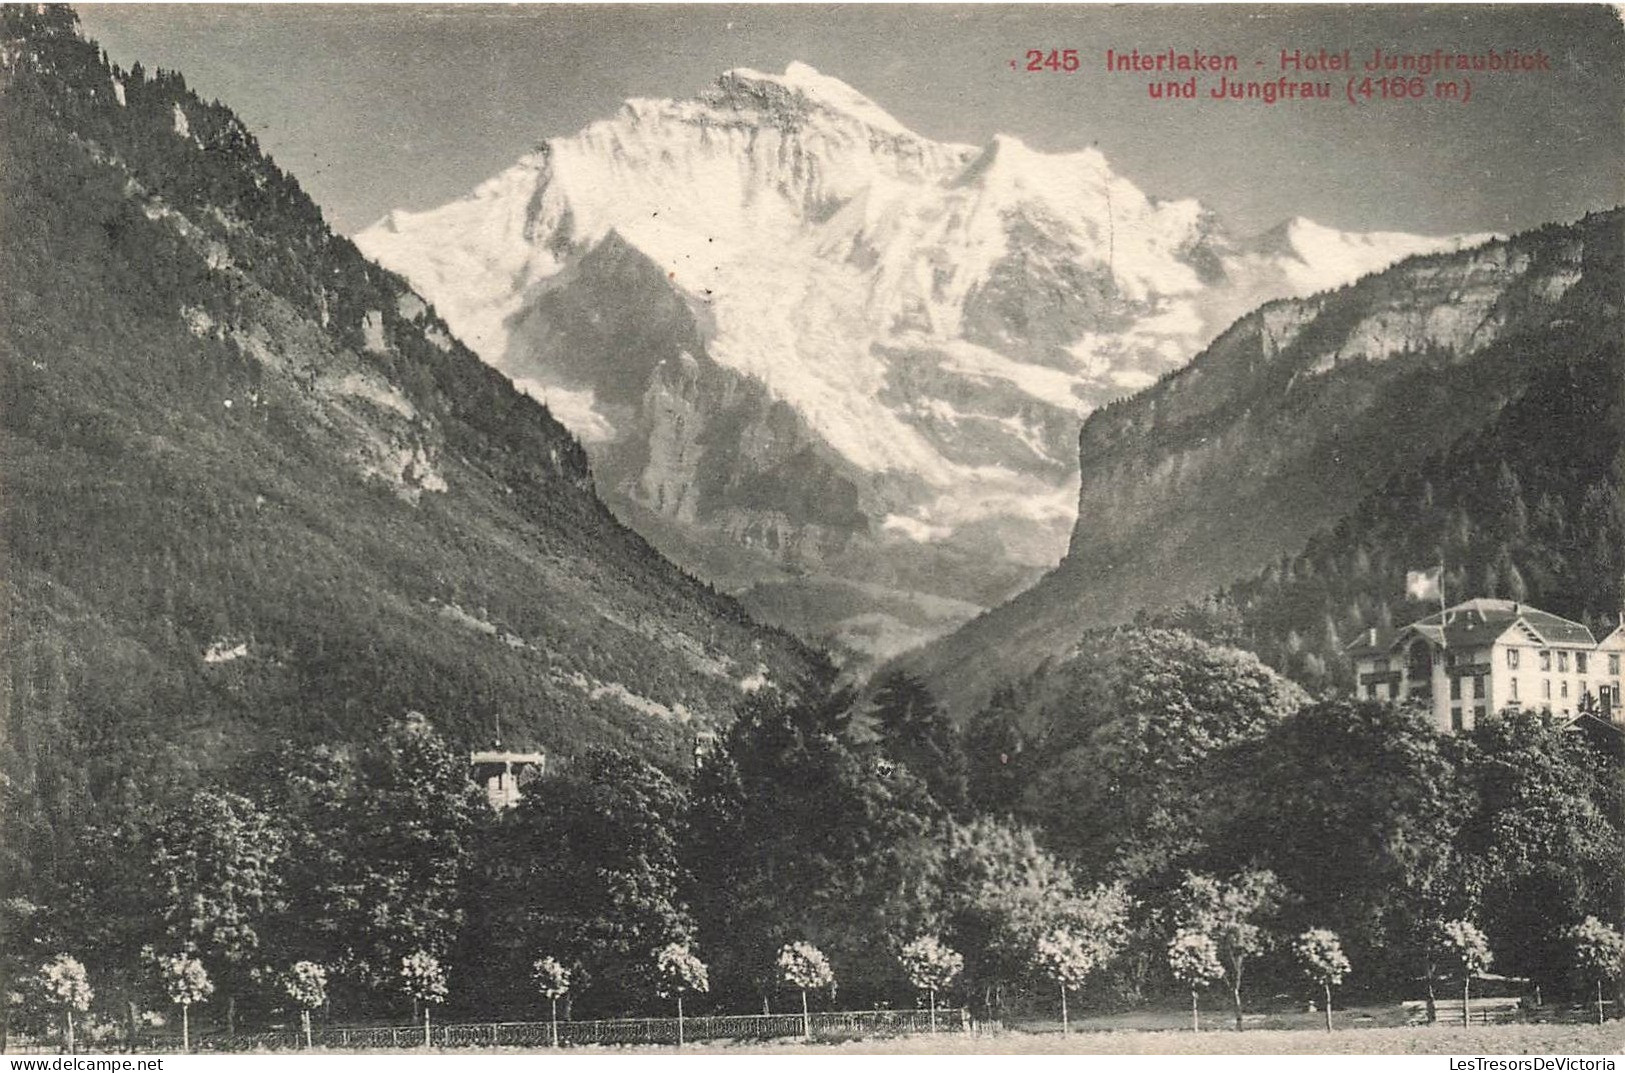 SUISSE - Interlaken - Hotel Jungfraublick Und Jungfrau (41669m) - Carte Postale Ancienne - Interlaken